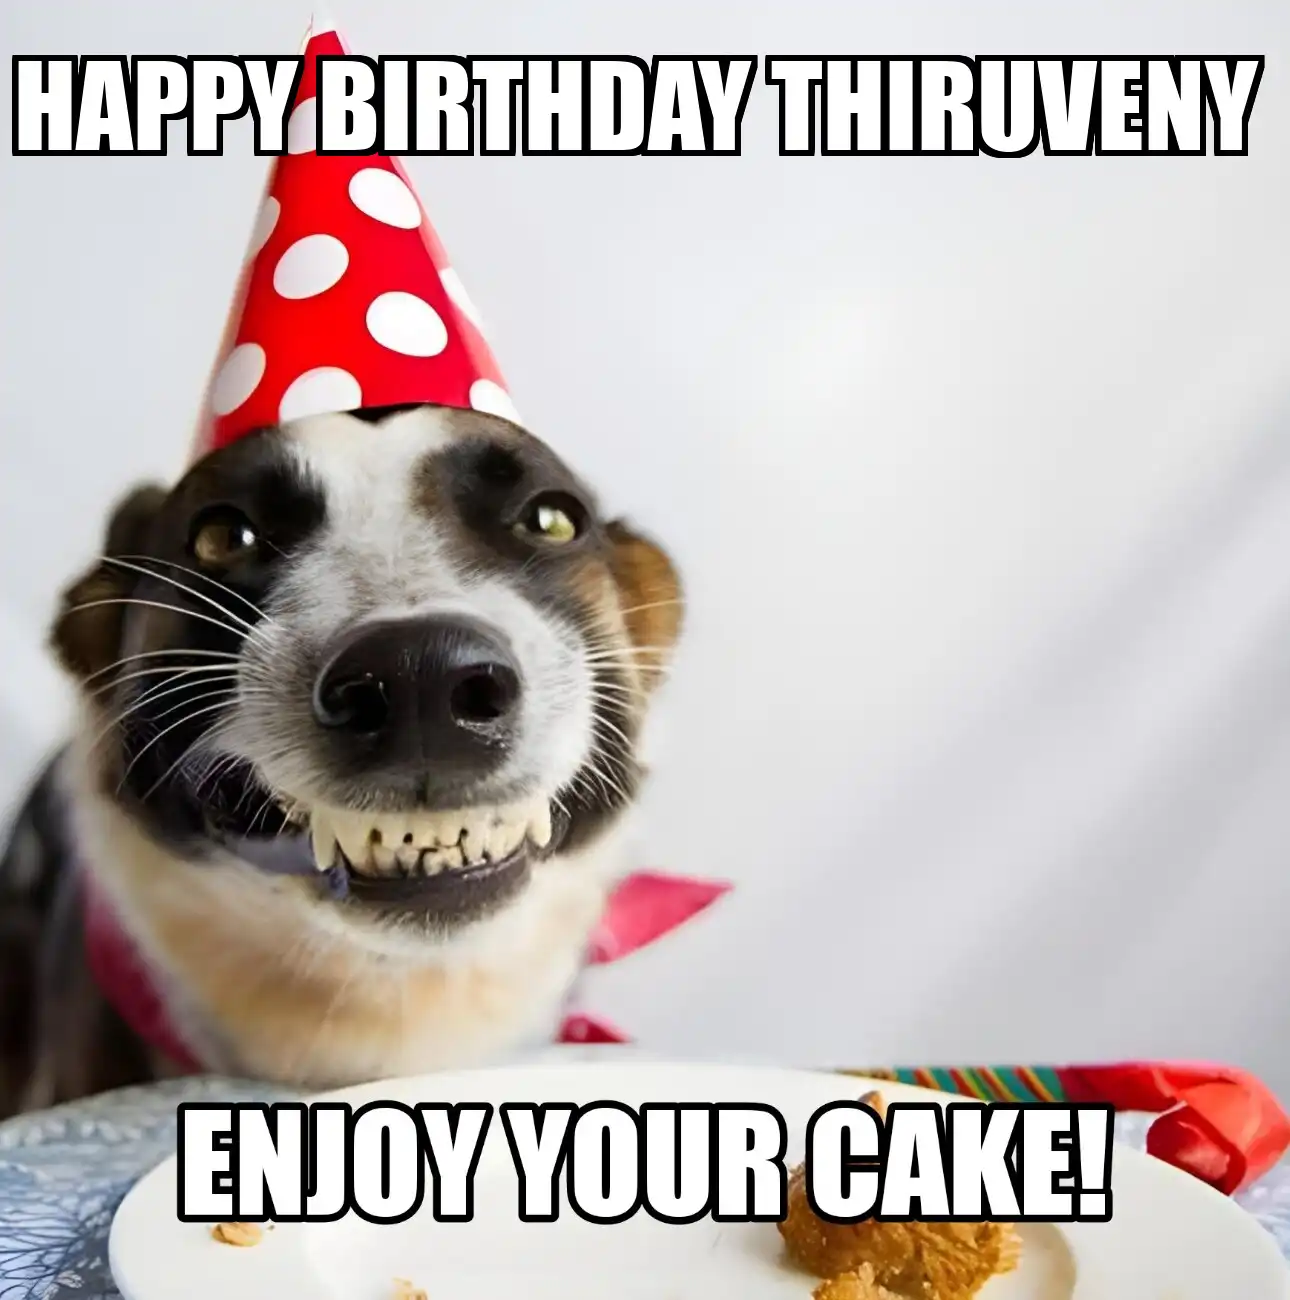 Happy Birthday Thiruveny Enjoy Your Cake Dog Meme